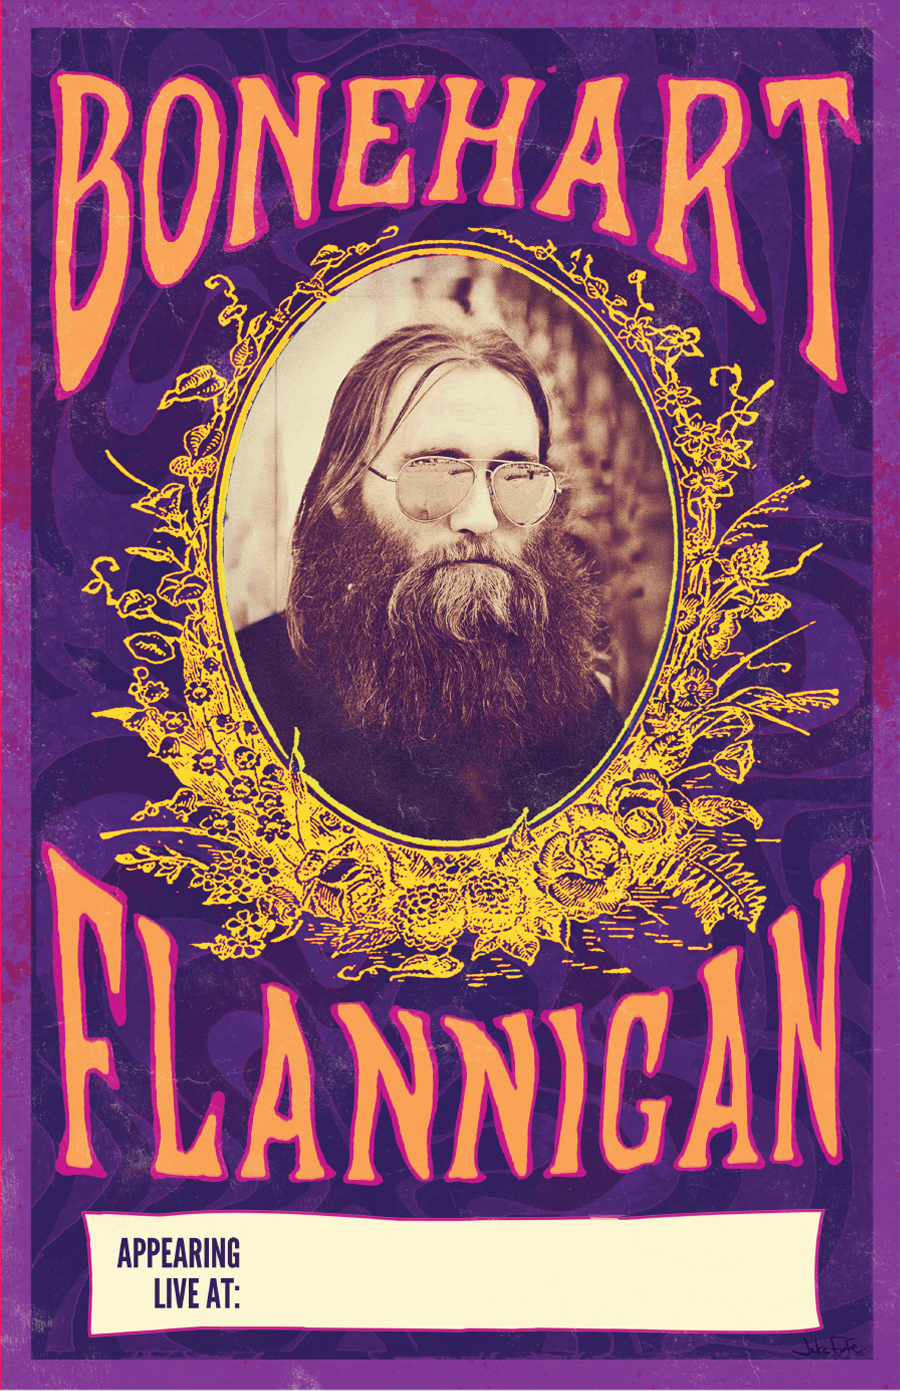 Bonehart Flannigan tour poster Fillmore psychedelic